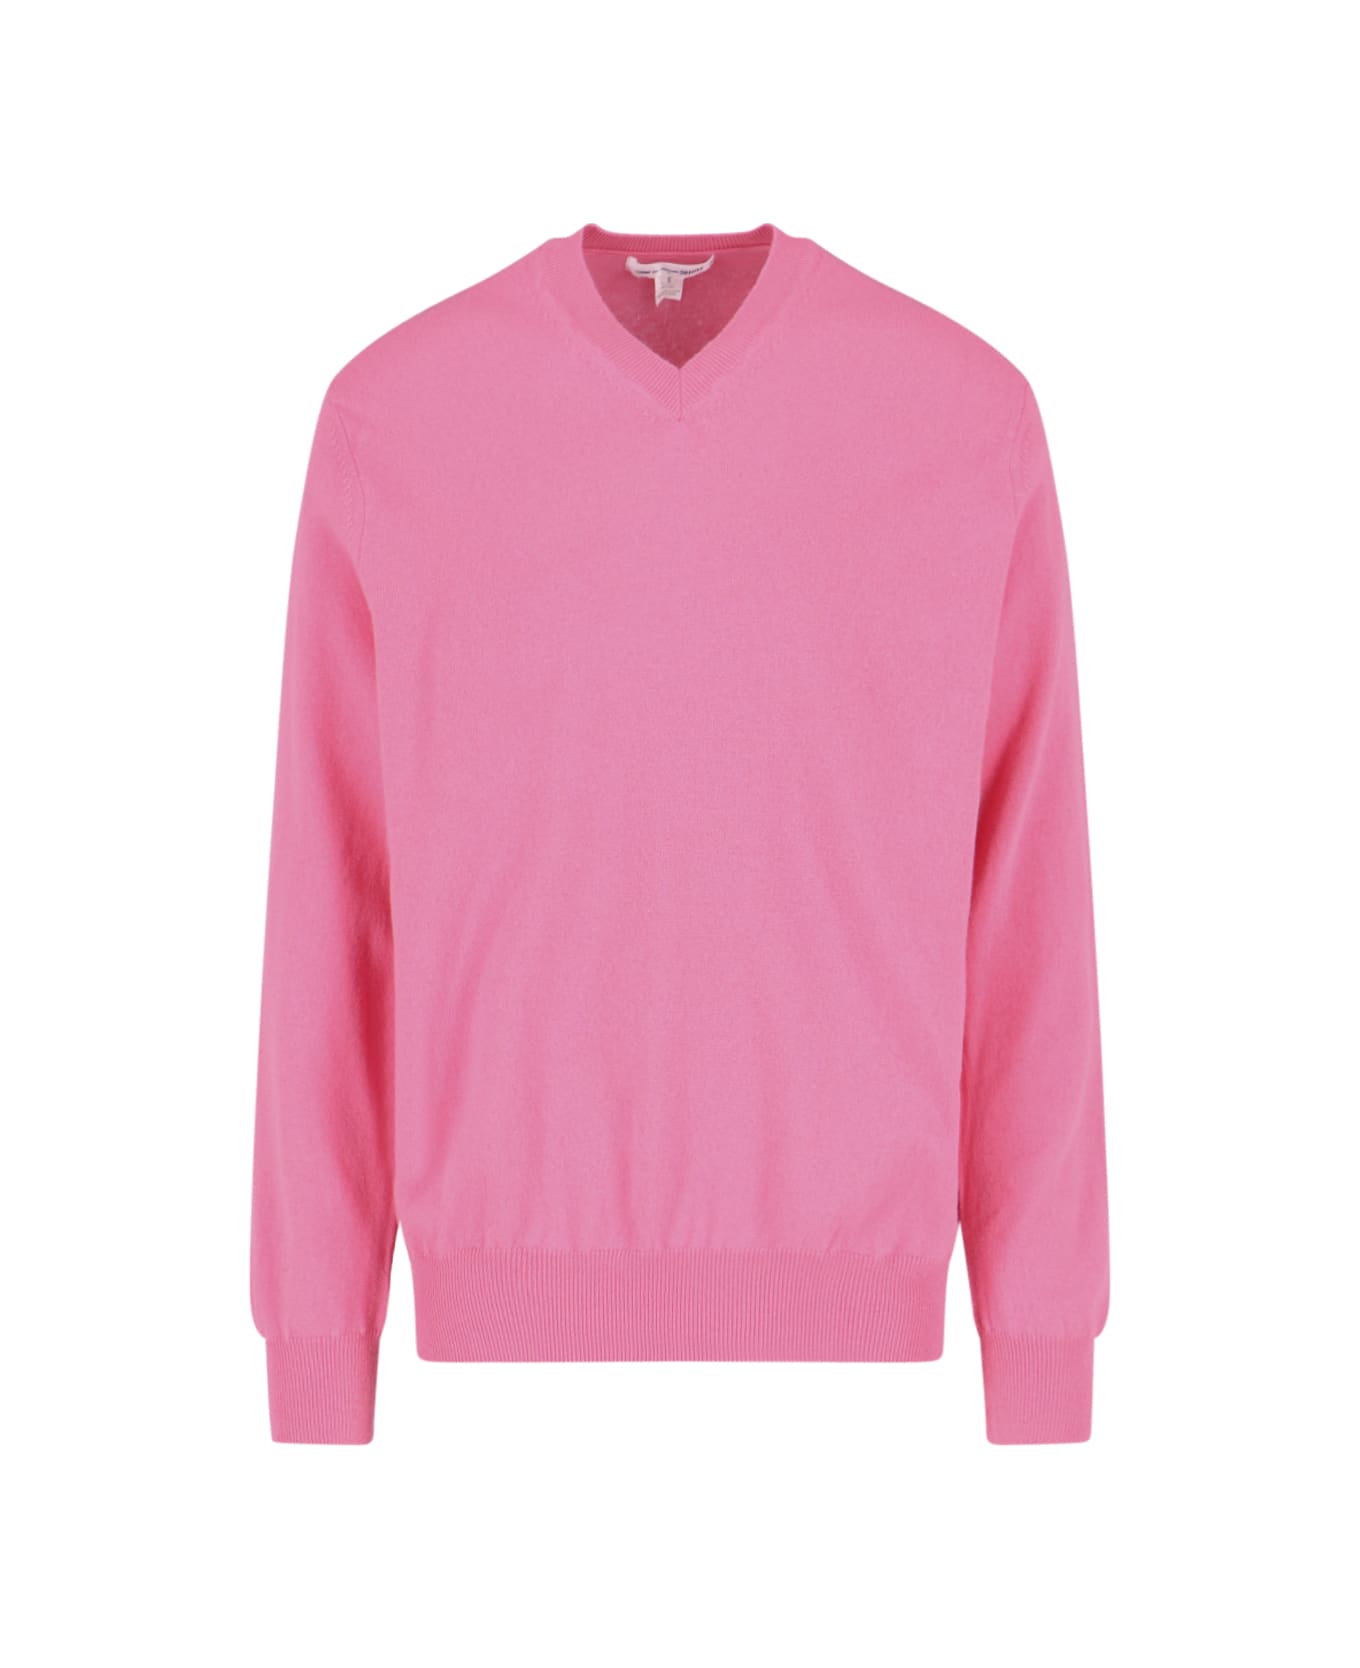 Comme des Garçons Wool Sweater - Pink